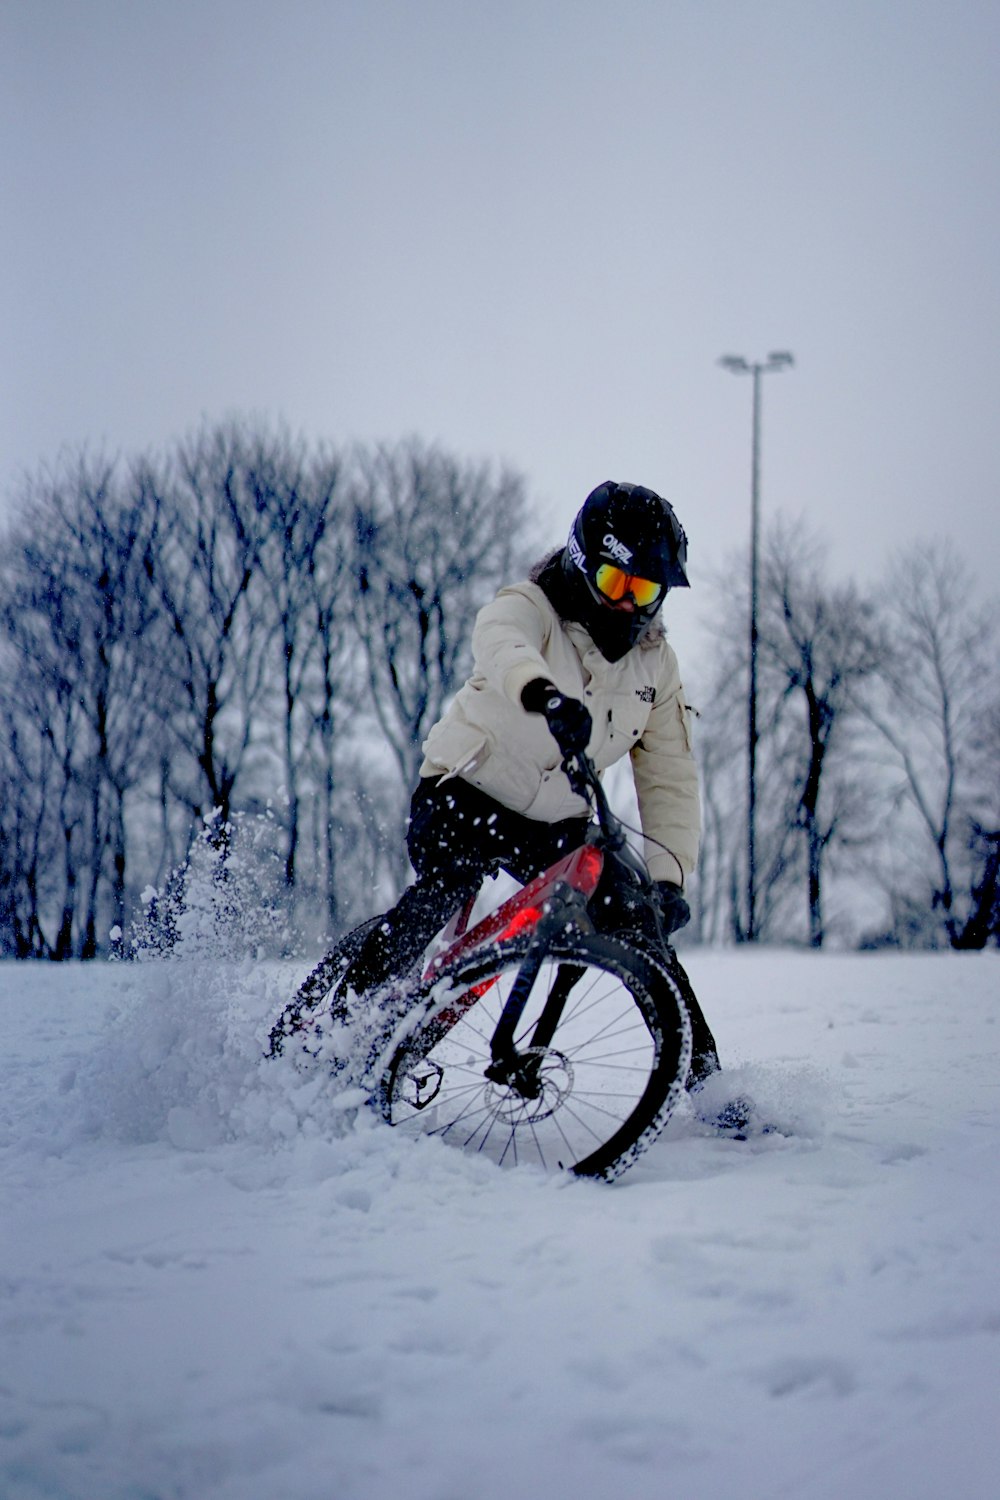 Mann in weißer Jacke fährt tagsüber auf schwarzem BMX-Bike auf schneebedecktem Untergrund